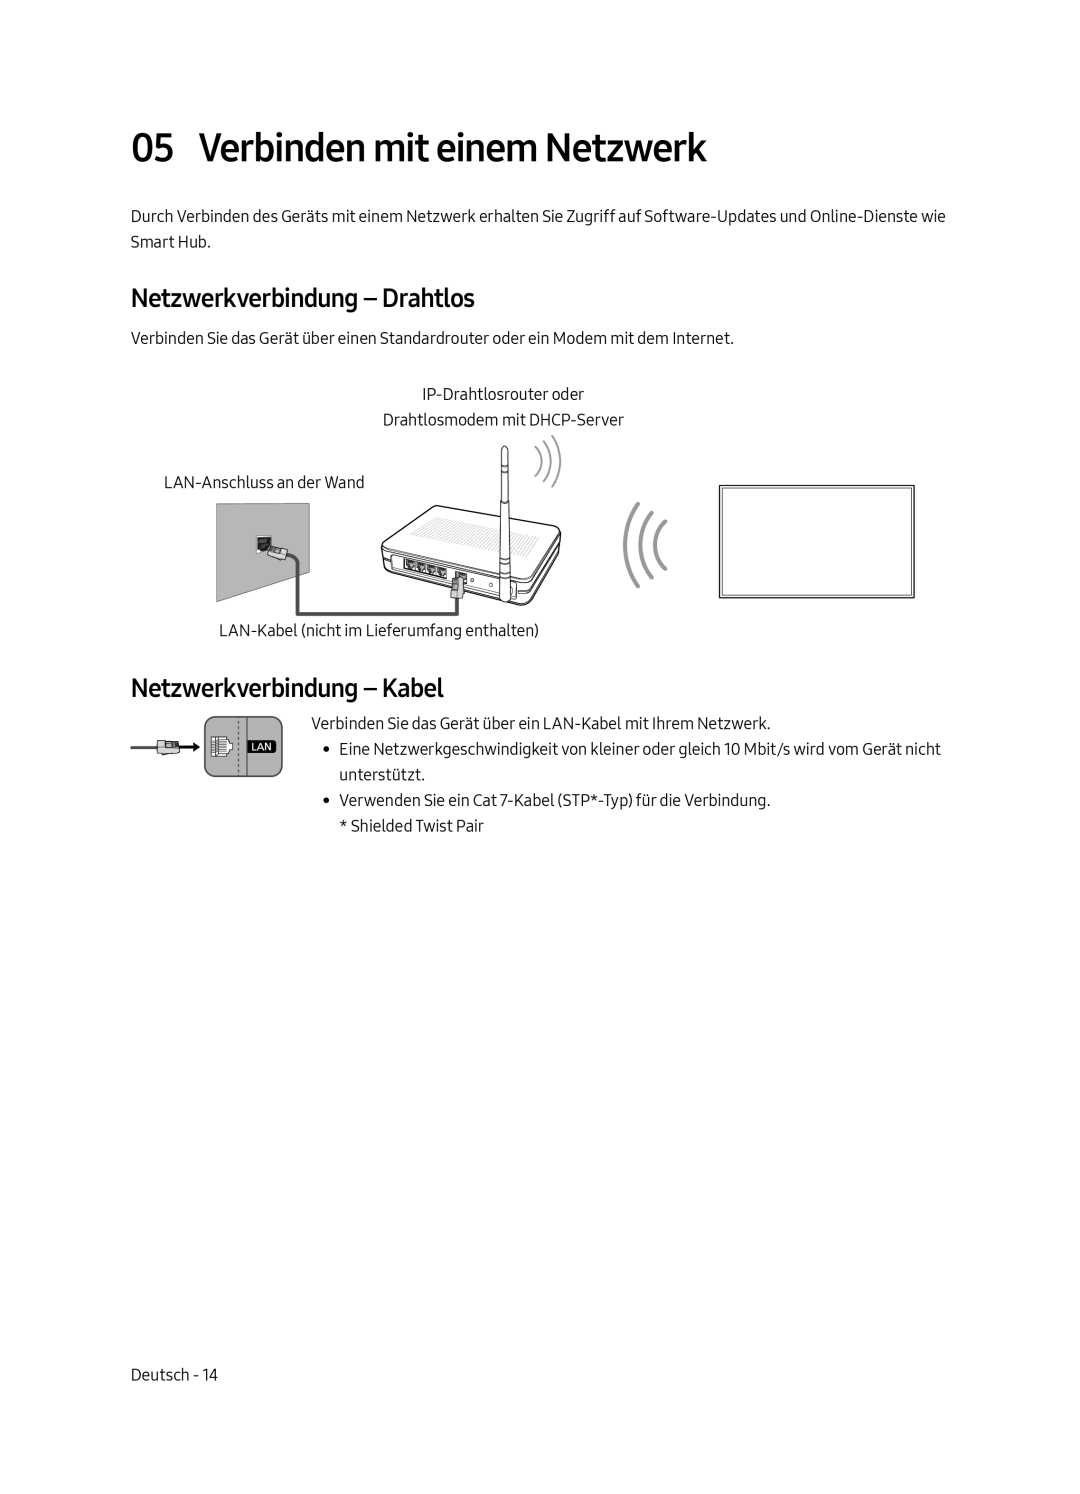 Samsung UE55MU7079TXZG manual Verbinden mit einem Netzwerk, Netzwerkverbindung - Drahtlos, Netzwerkverbindung - Kabel 